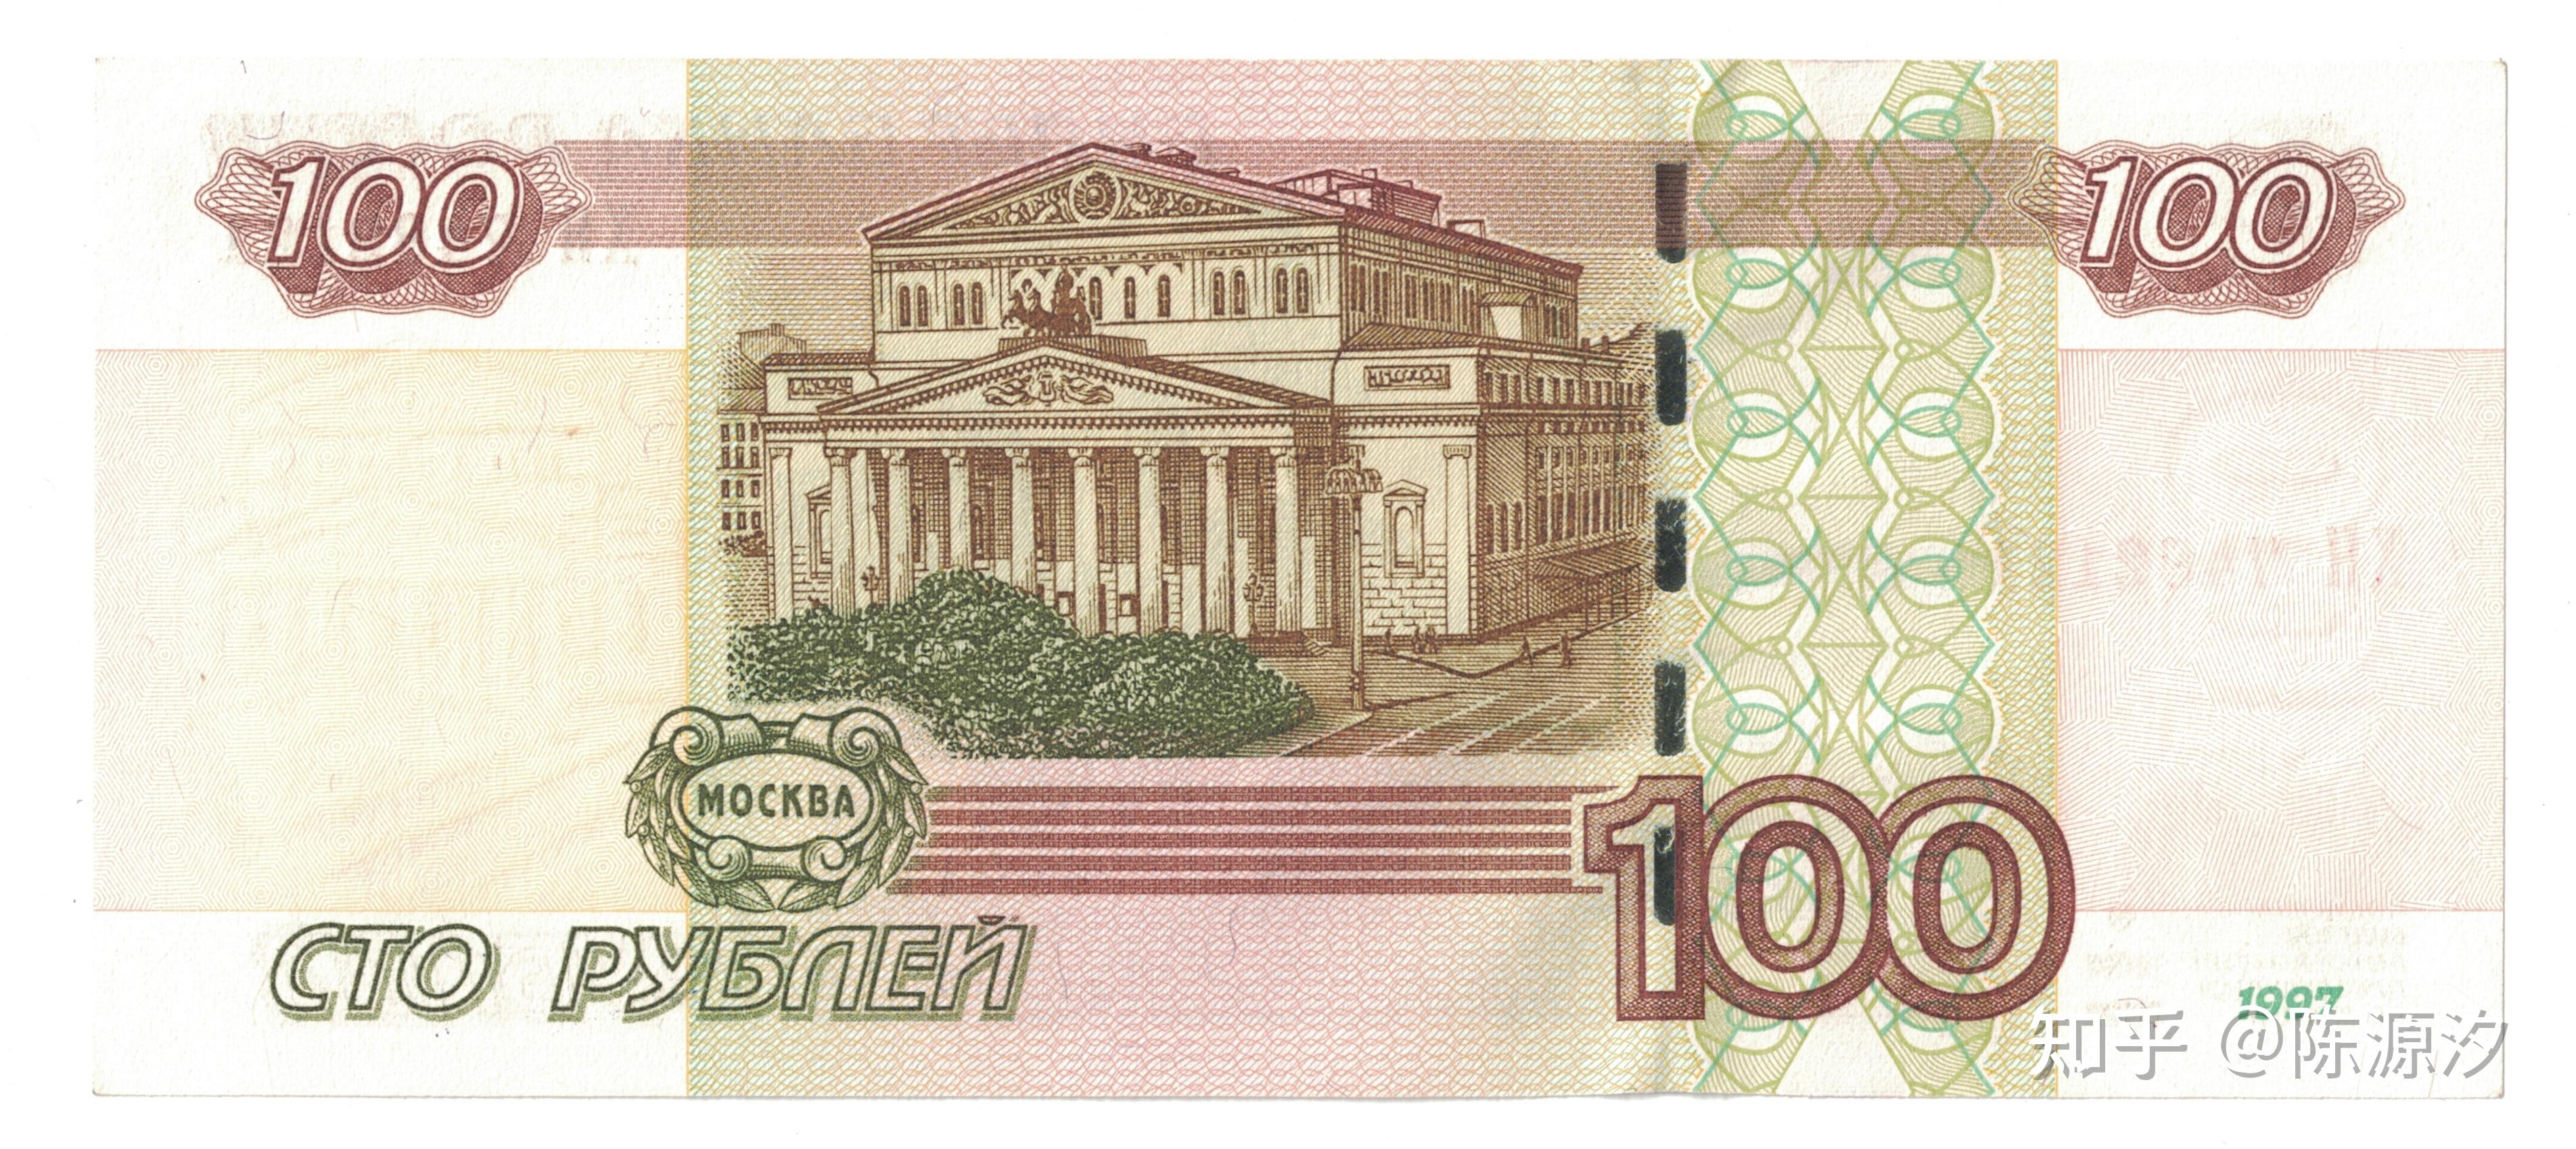 有的1995年版基础上砍零[1]后的产物(1995年版1000卢布由于面额过低